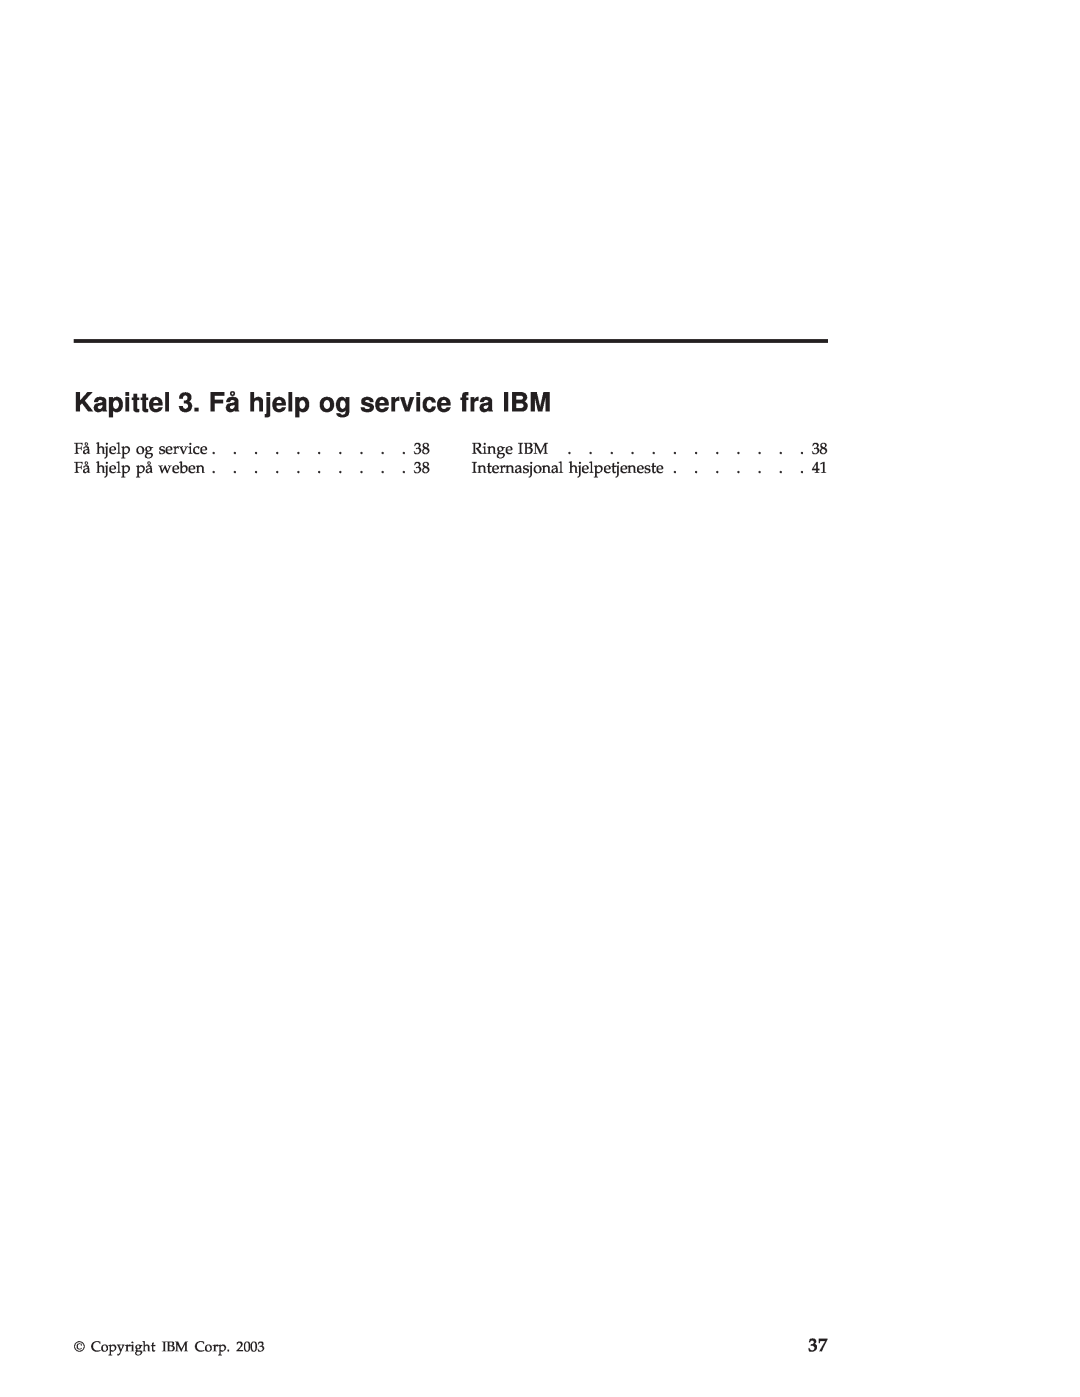 IBM R50 manual Kapittel 3. Få hjelp og service fra IBM, Ringe IBM, Få hjelp på weben, Internasjonal hjelpetjeneste 